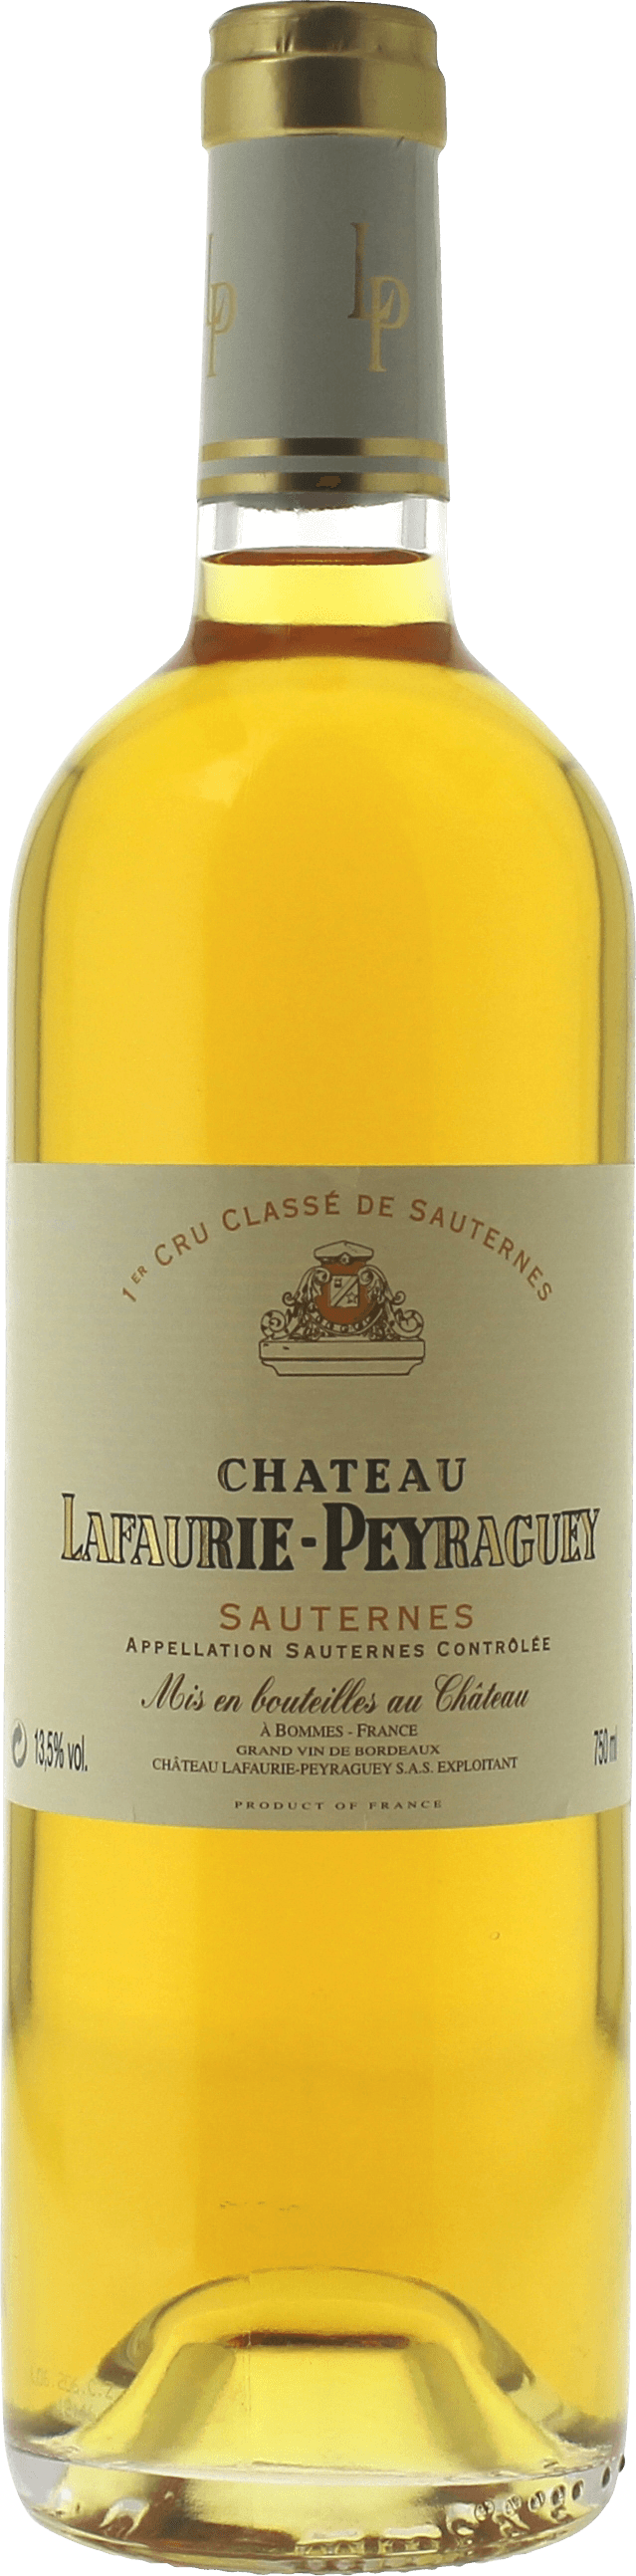 Lafaurie peyraguey 1996  Sauternes, Bordeaux blanc